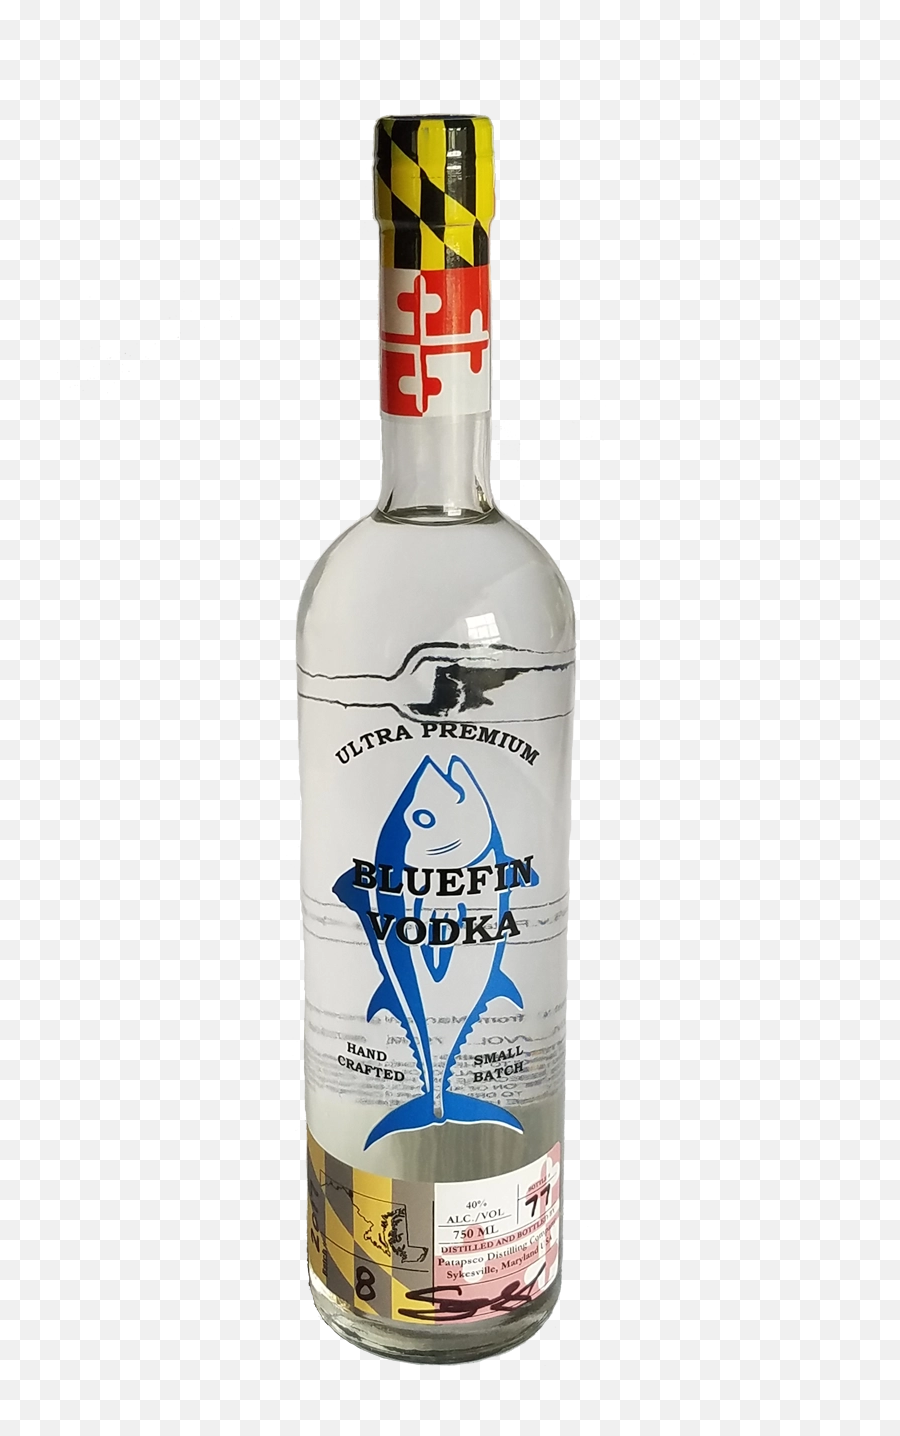 Download Blue Fin Vodka - Vodka Distillery Sykesville Md Png,Vodka Png